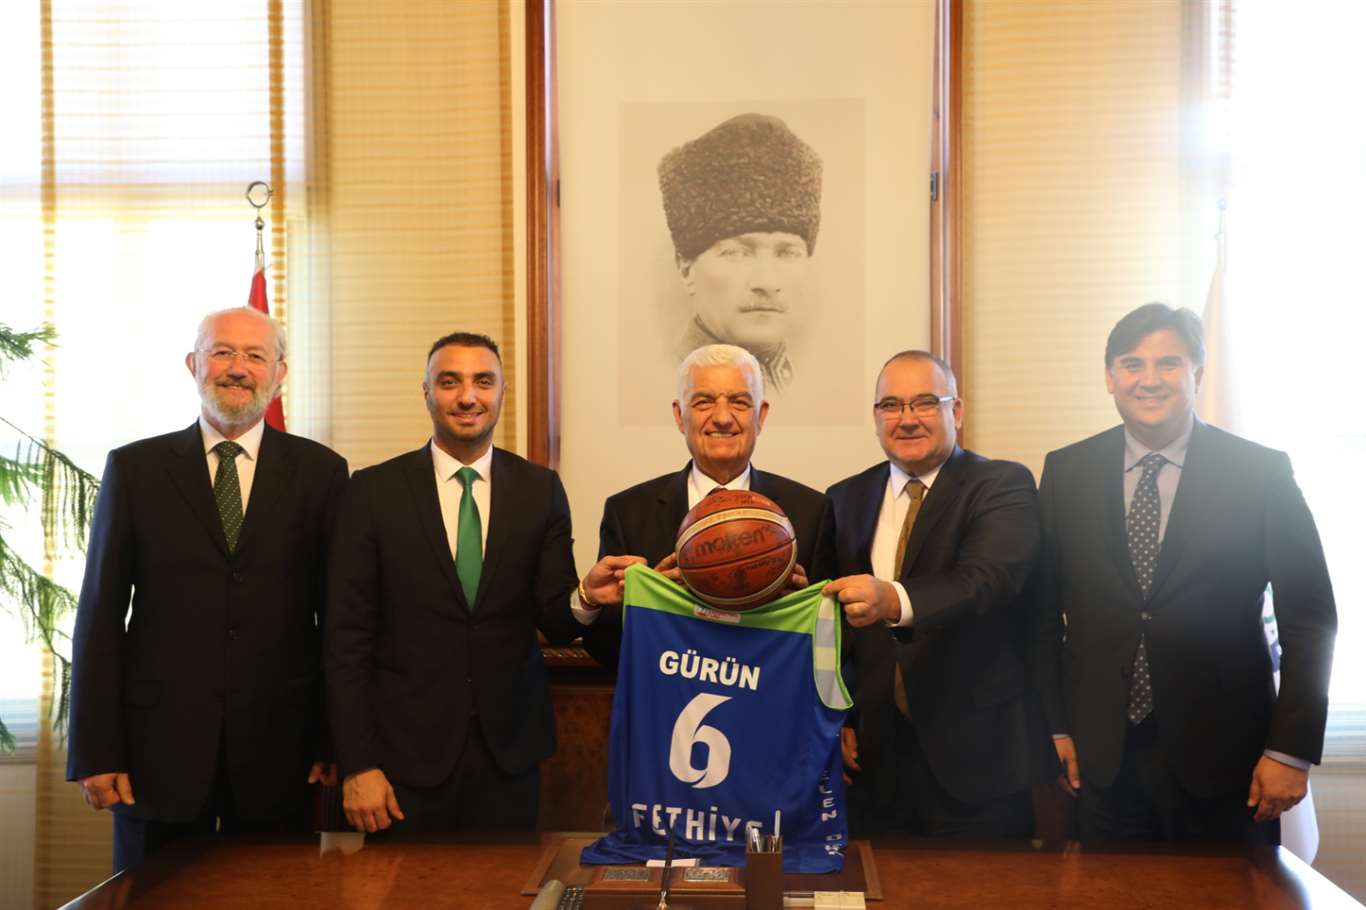    Lokman Hekim Fethiye Belediyespor'dan Başkan Gürün'e ziyaret haberi